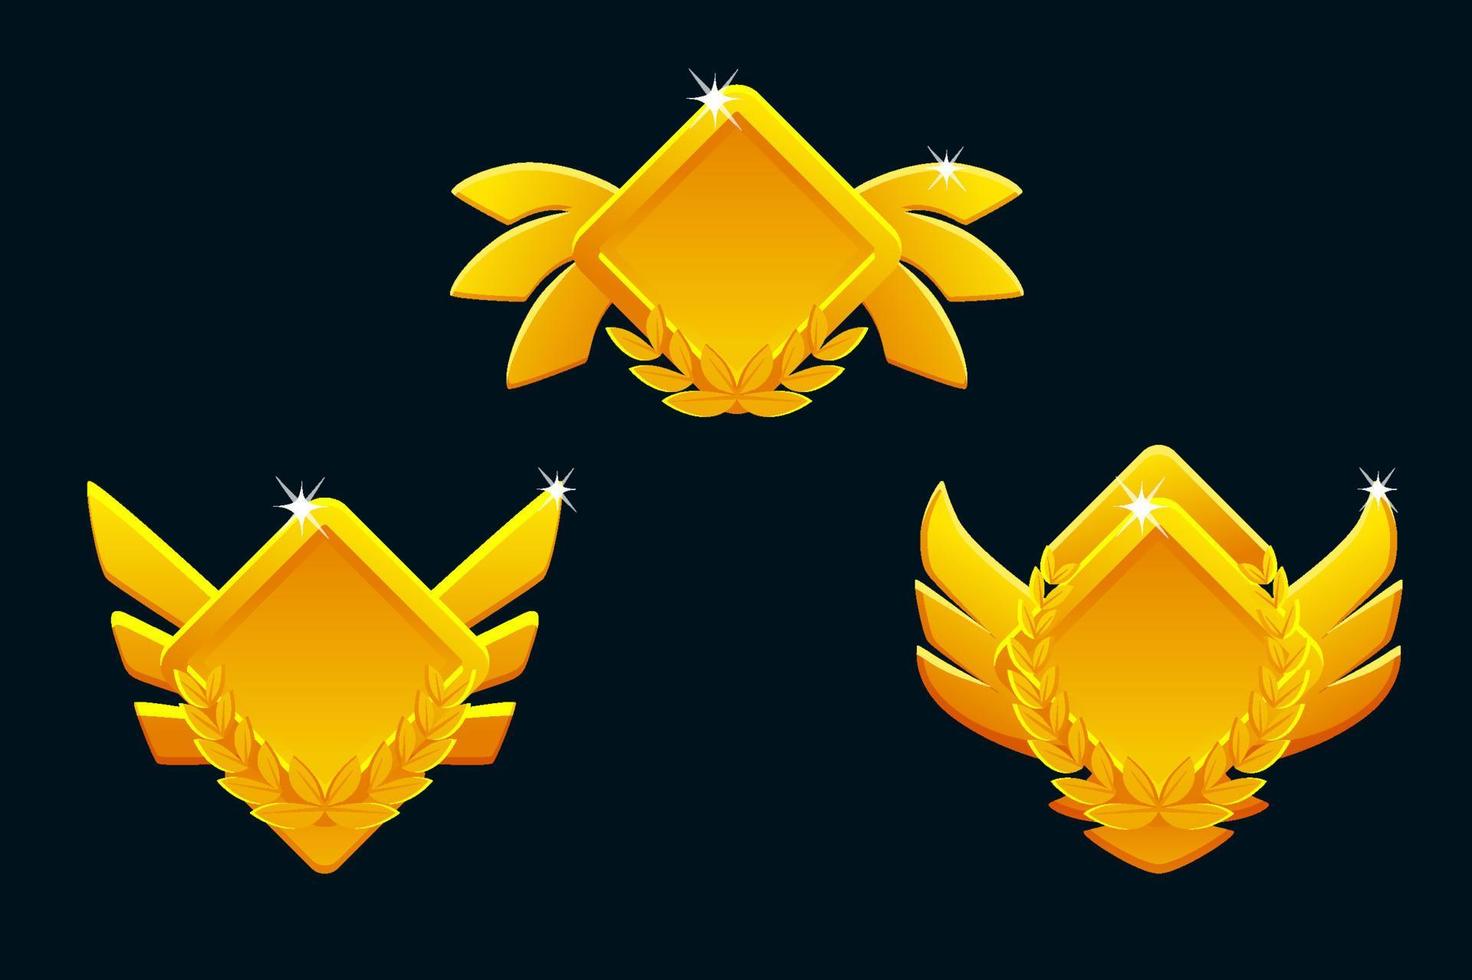 goldene spielrangsymbole isoliert. spielabzeichenknöpfe im rautenrahmen mit flügeln vektor